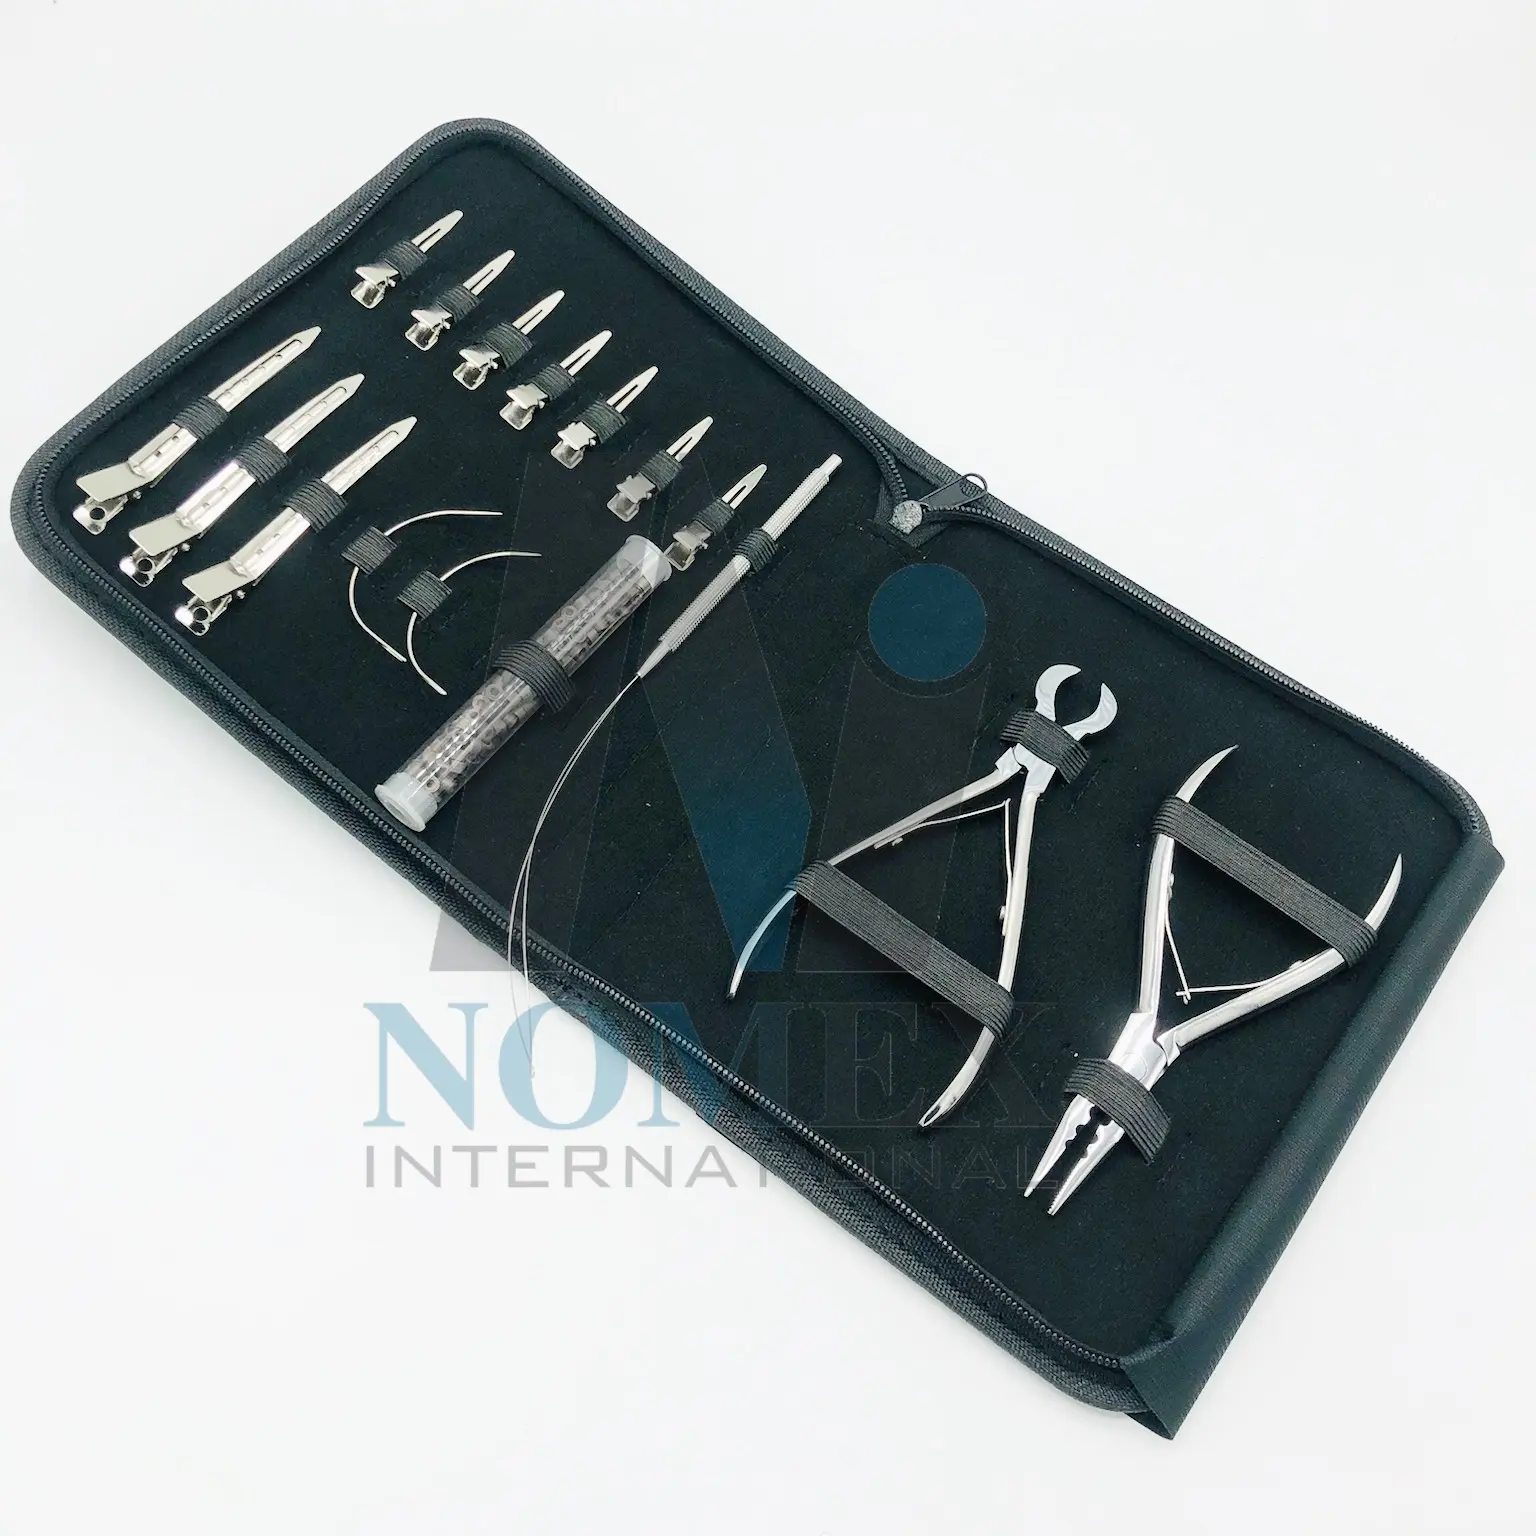 Herramientas y accesorios para extensiones de cabello, alicates de 3 agujeros para pinzas de metal para el cabello, logotipo personalizado de acero inoxidable sólido